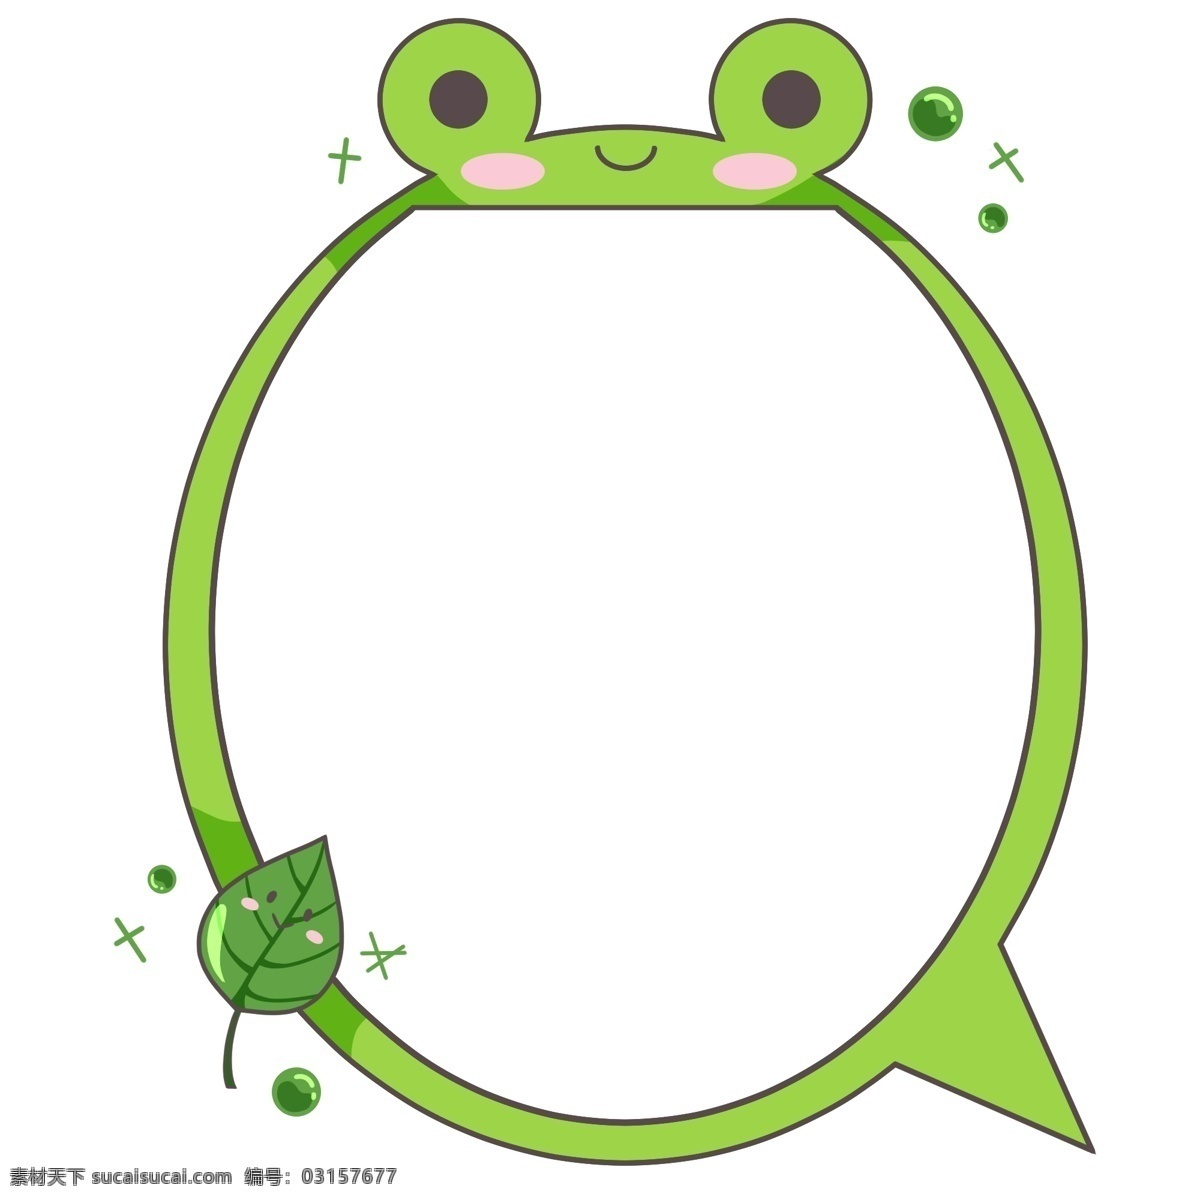 绿色 大 青蛙 边框 漂亮 手绘青蛙边框 绿色的叶子 可爱 立体青蛙边框